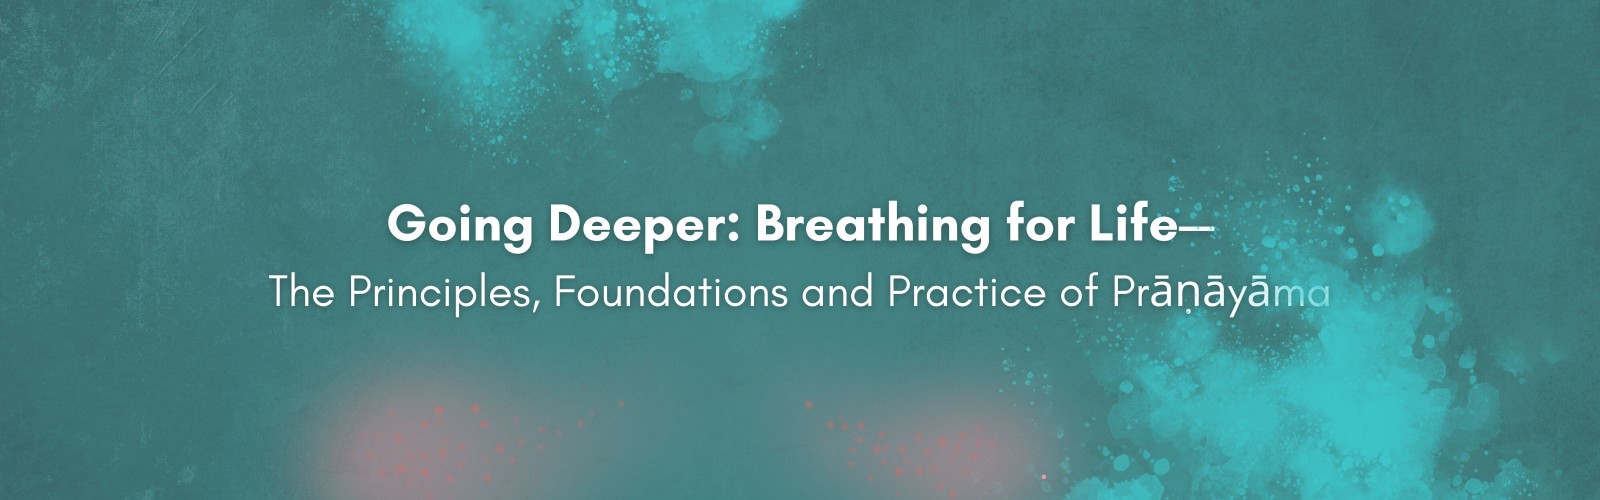 Going Deep: Breathing for Life Desktop Banner